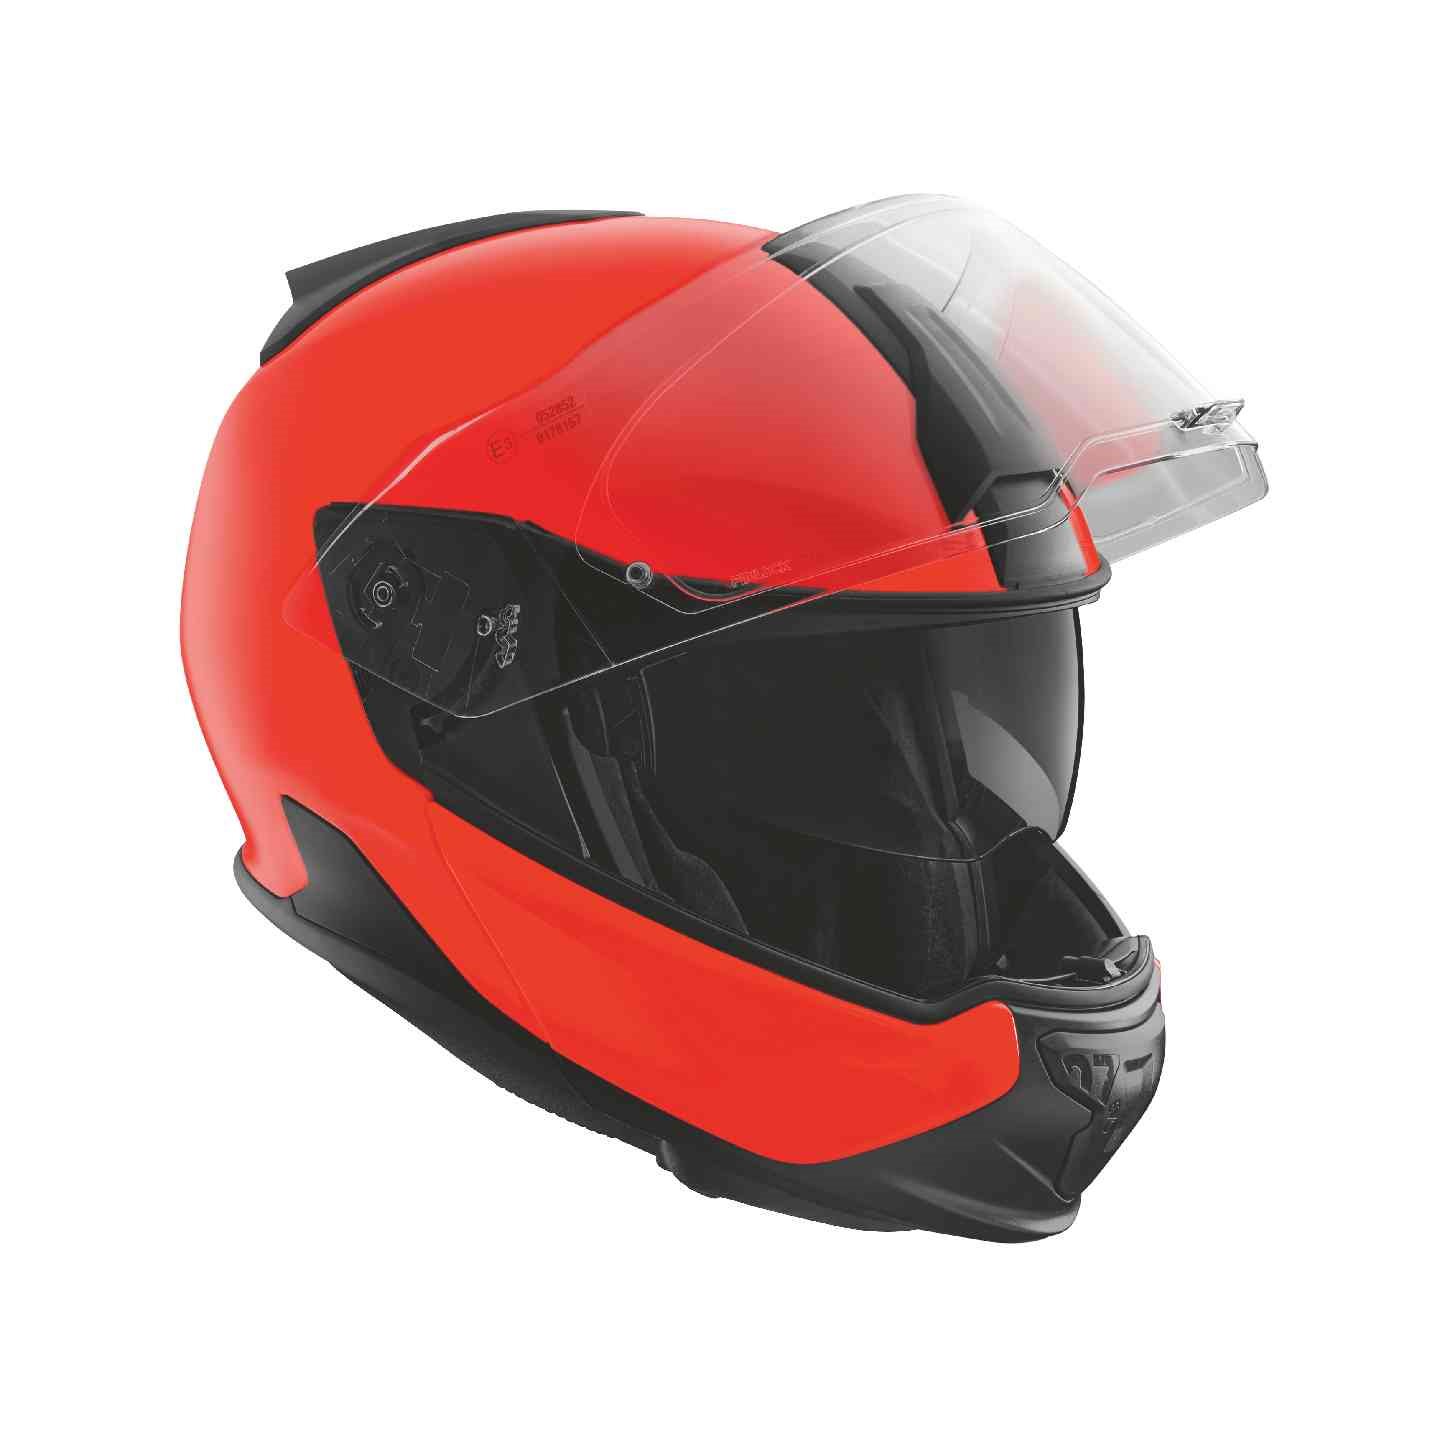 BMW Motorrad Helm System 7 EVO Carbon Neon statt 760,00 EUR jetzt